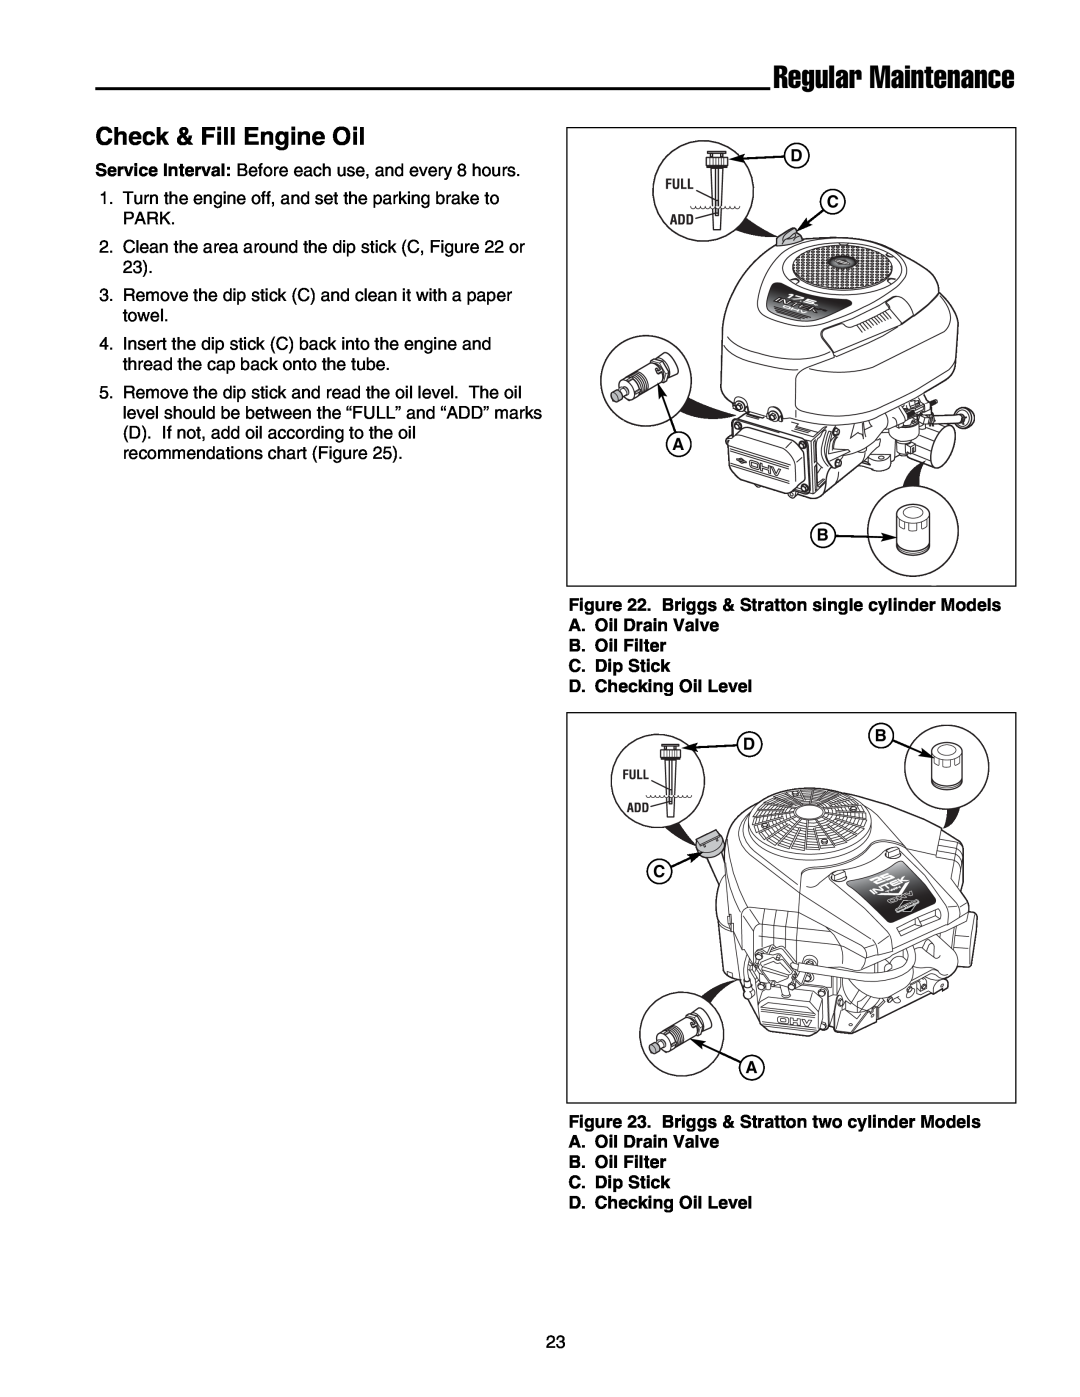 Snapper LT-200 Series manual Check & Fill Engine Oil, Regular Maintenance 